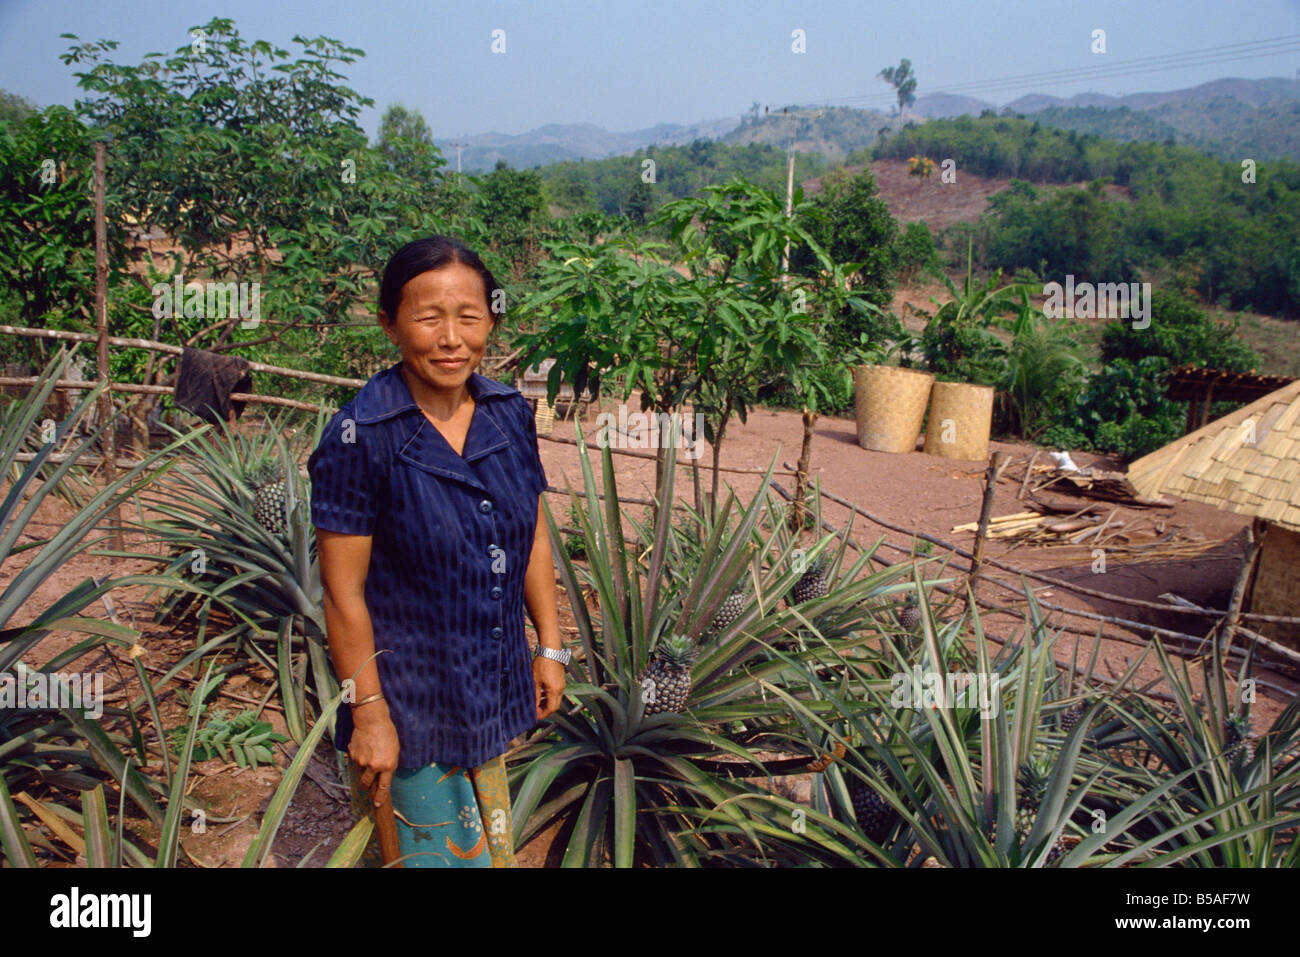 De plus en plus l'ananas, rapatriés hmongs du Laos, l'Indochine, en Asie du sud-est Banque D'Images